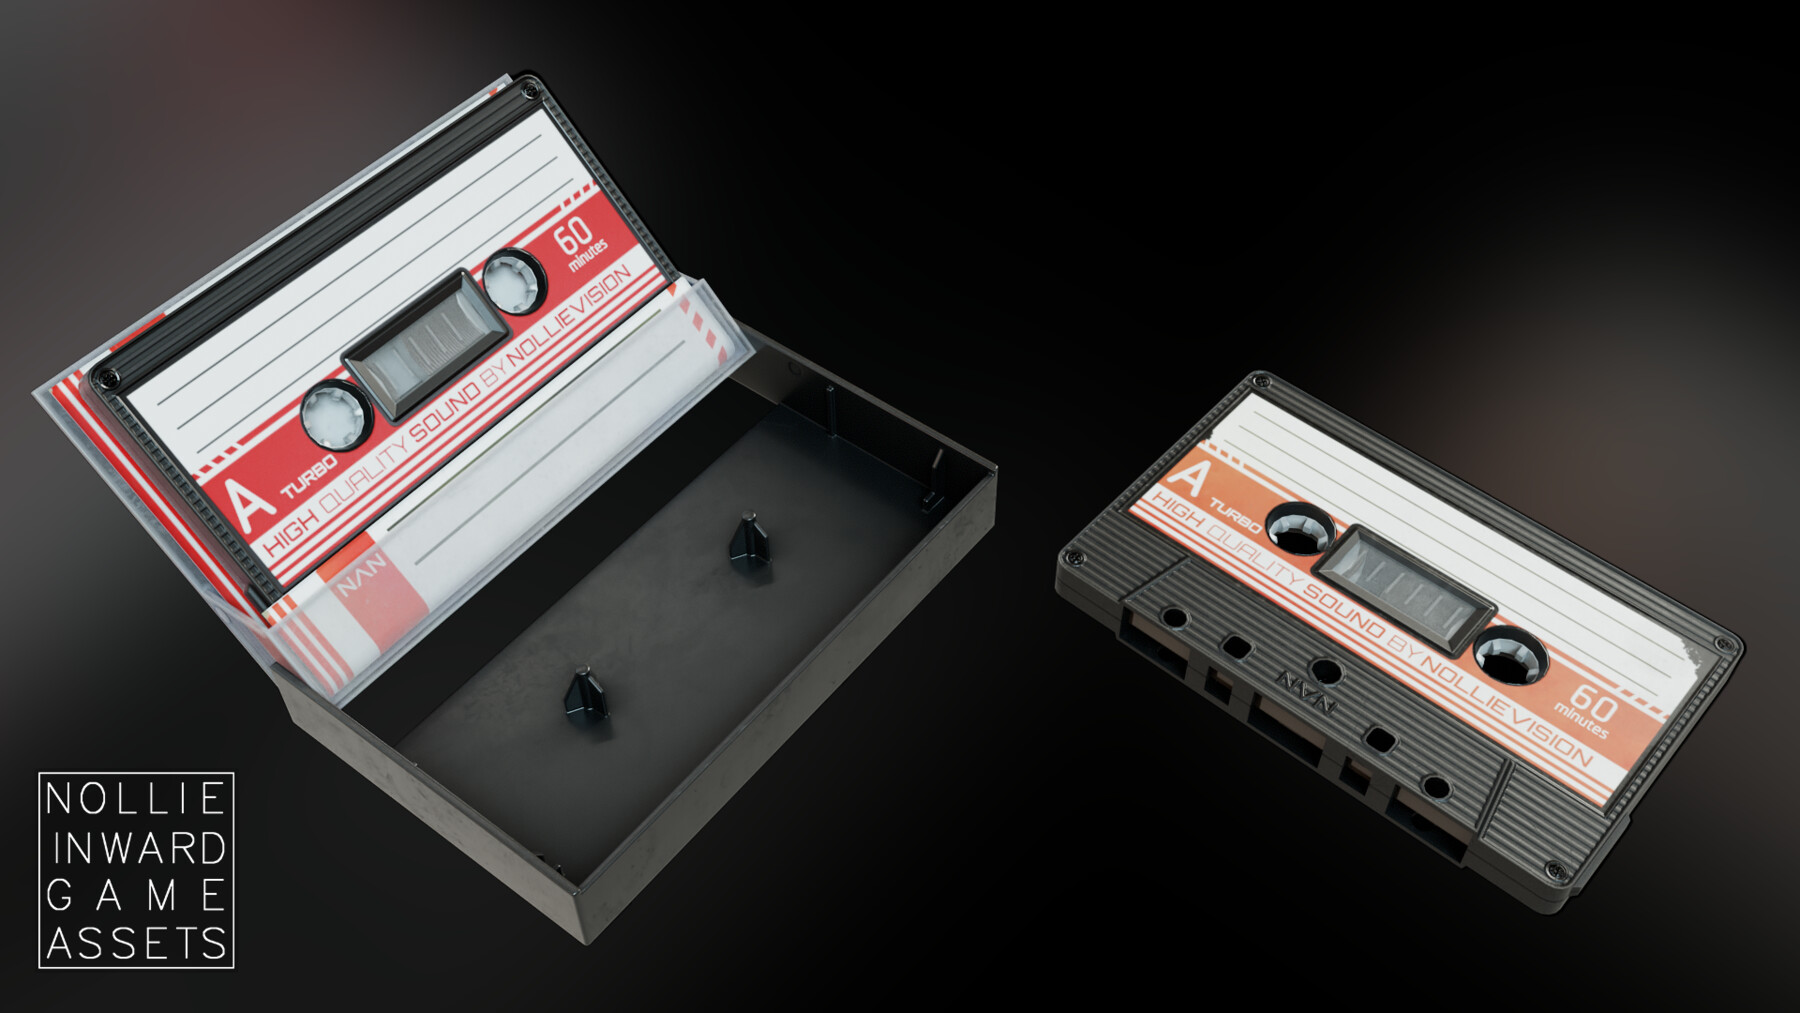 ArtStation - Cassette Tape and Case Black | Game Assets